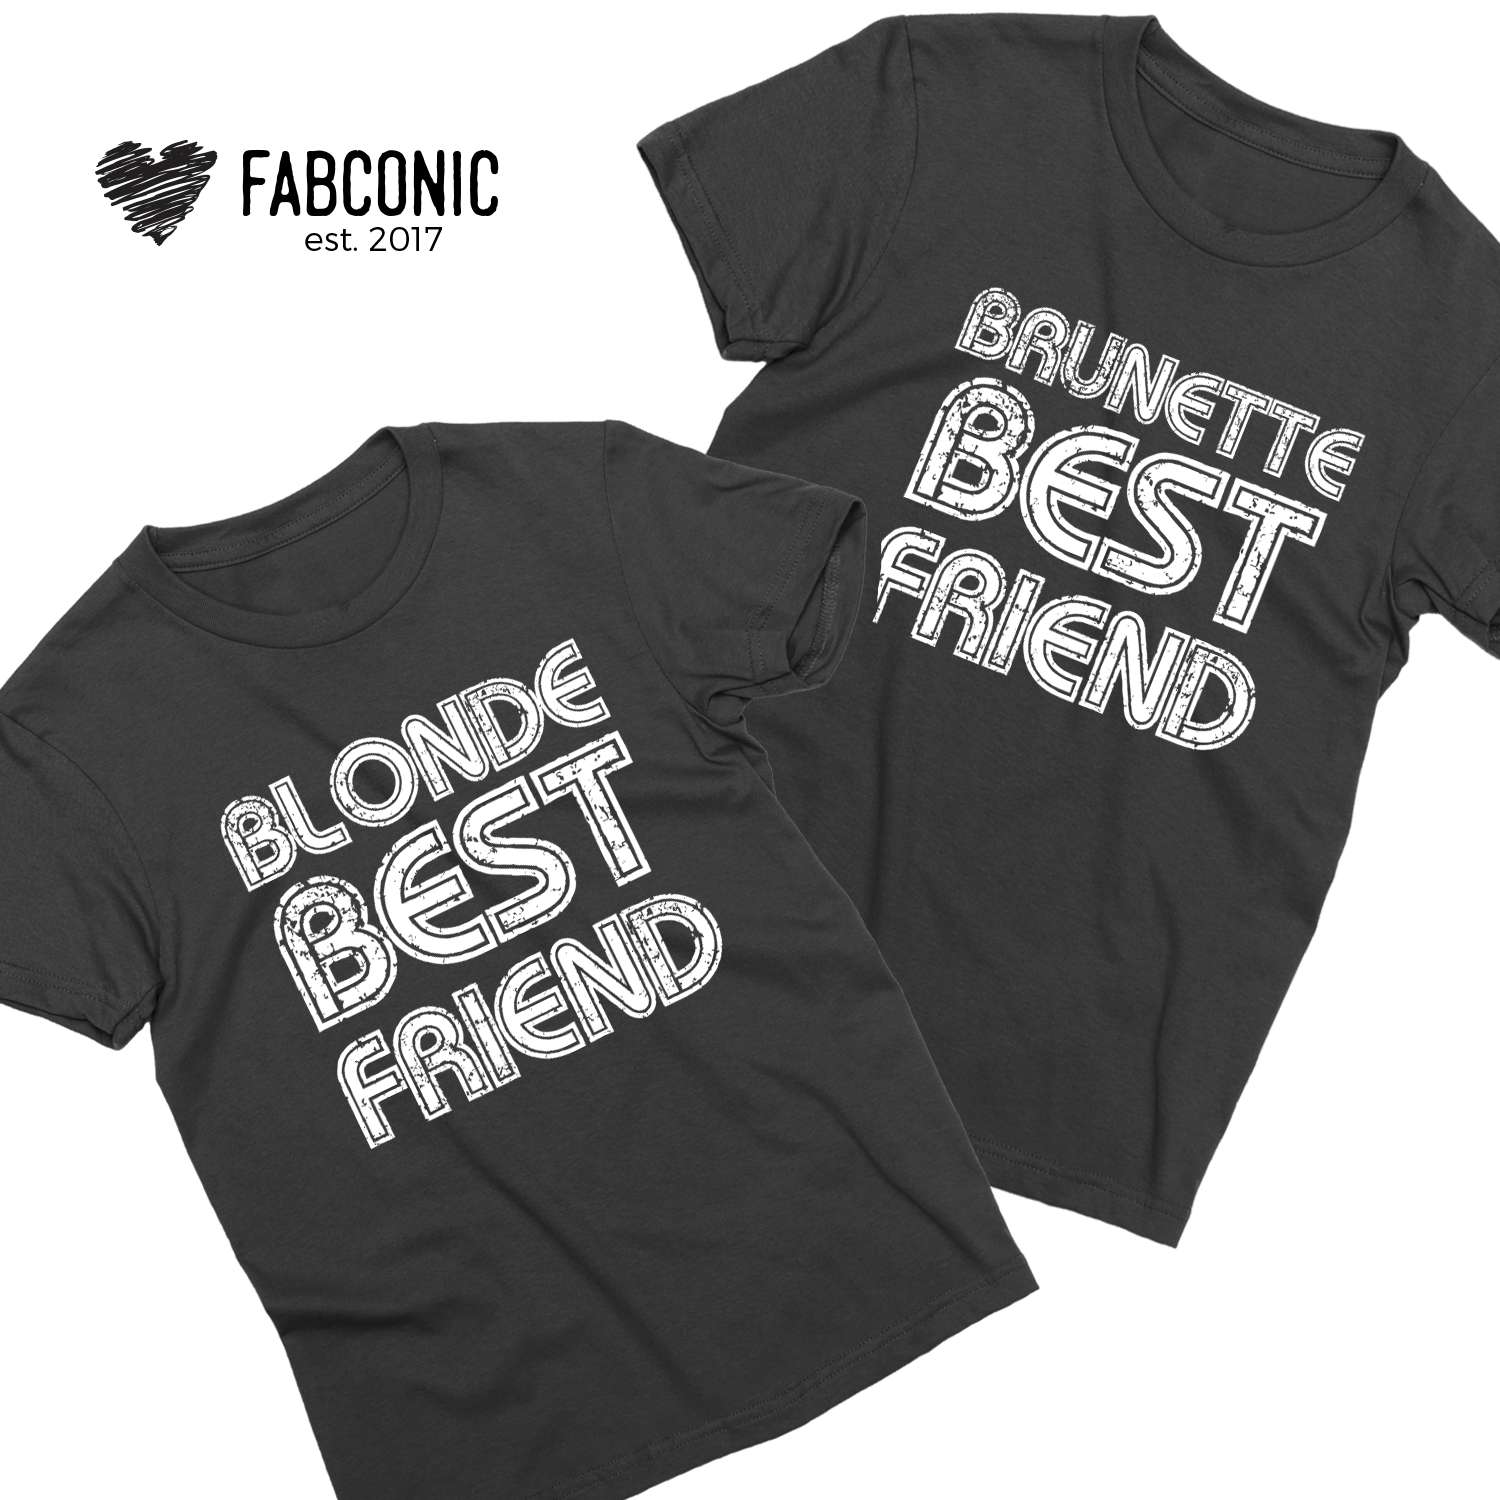 blonde best friend and brunette best friend sweatshirts